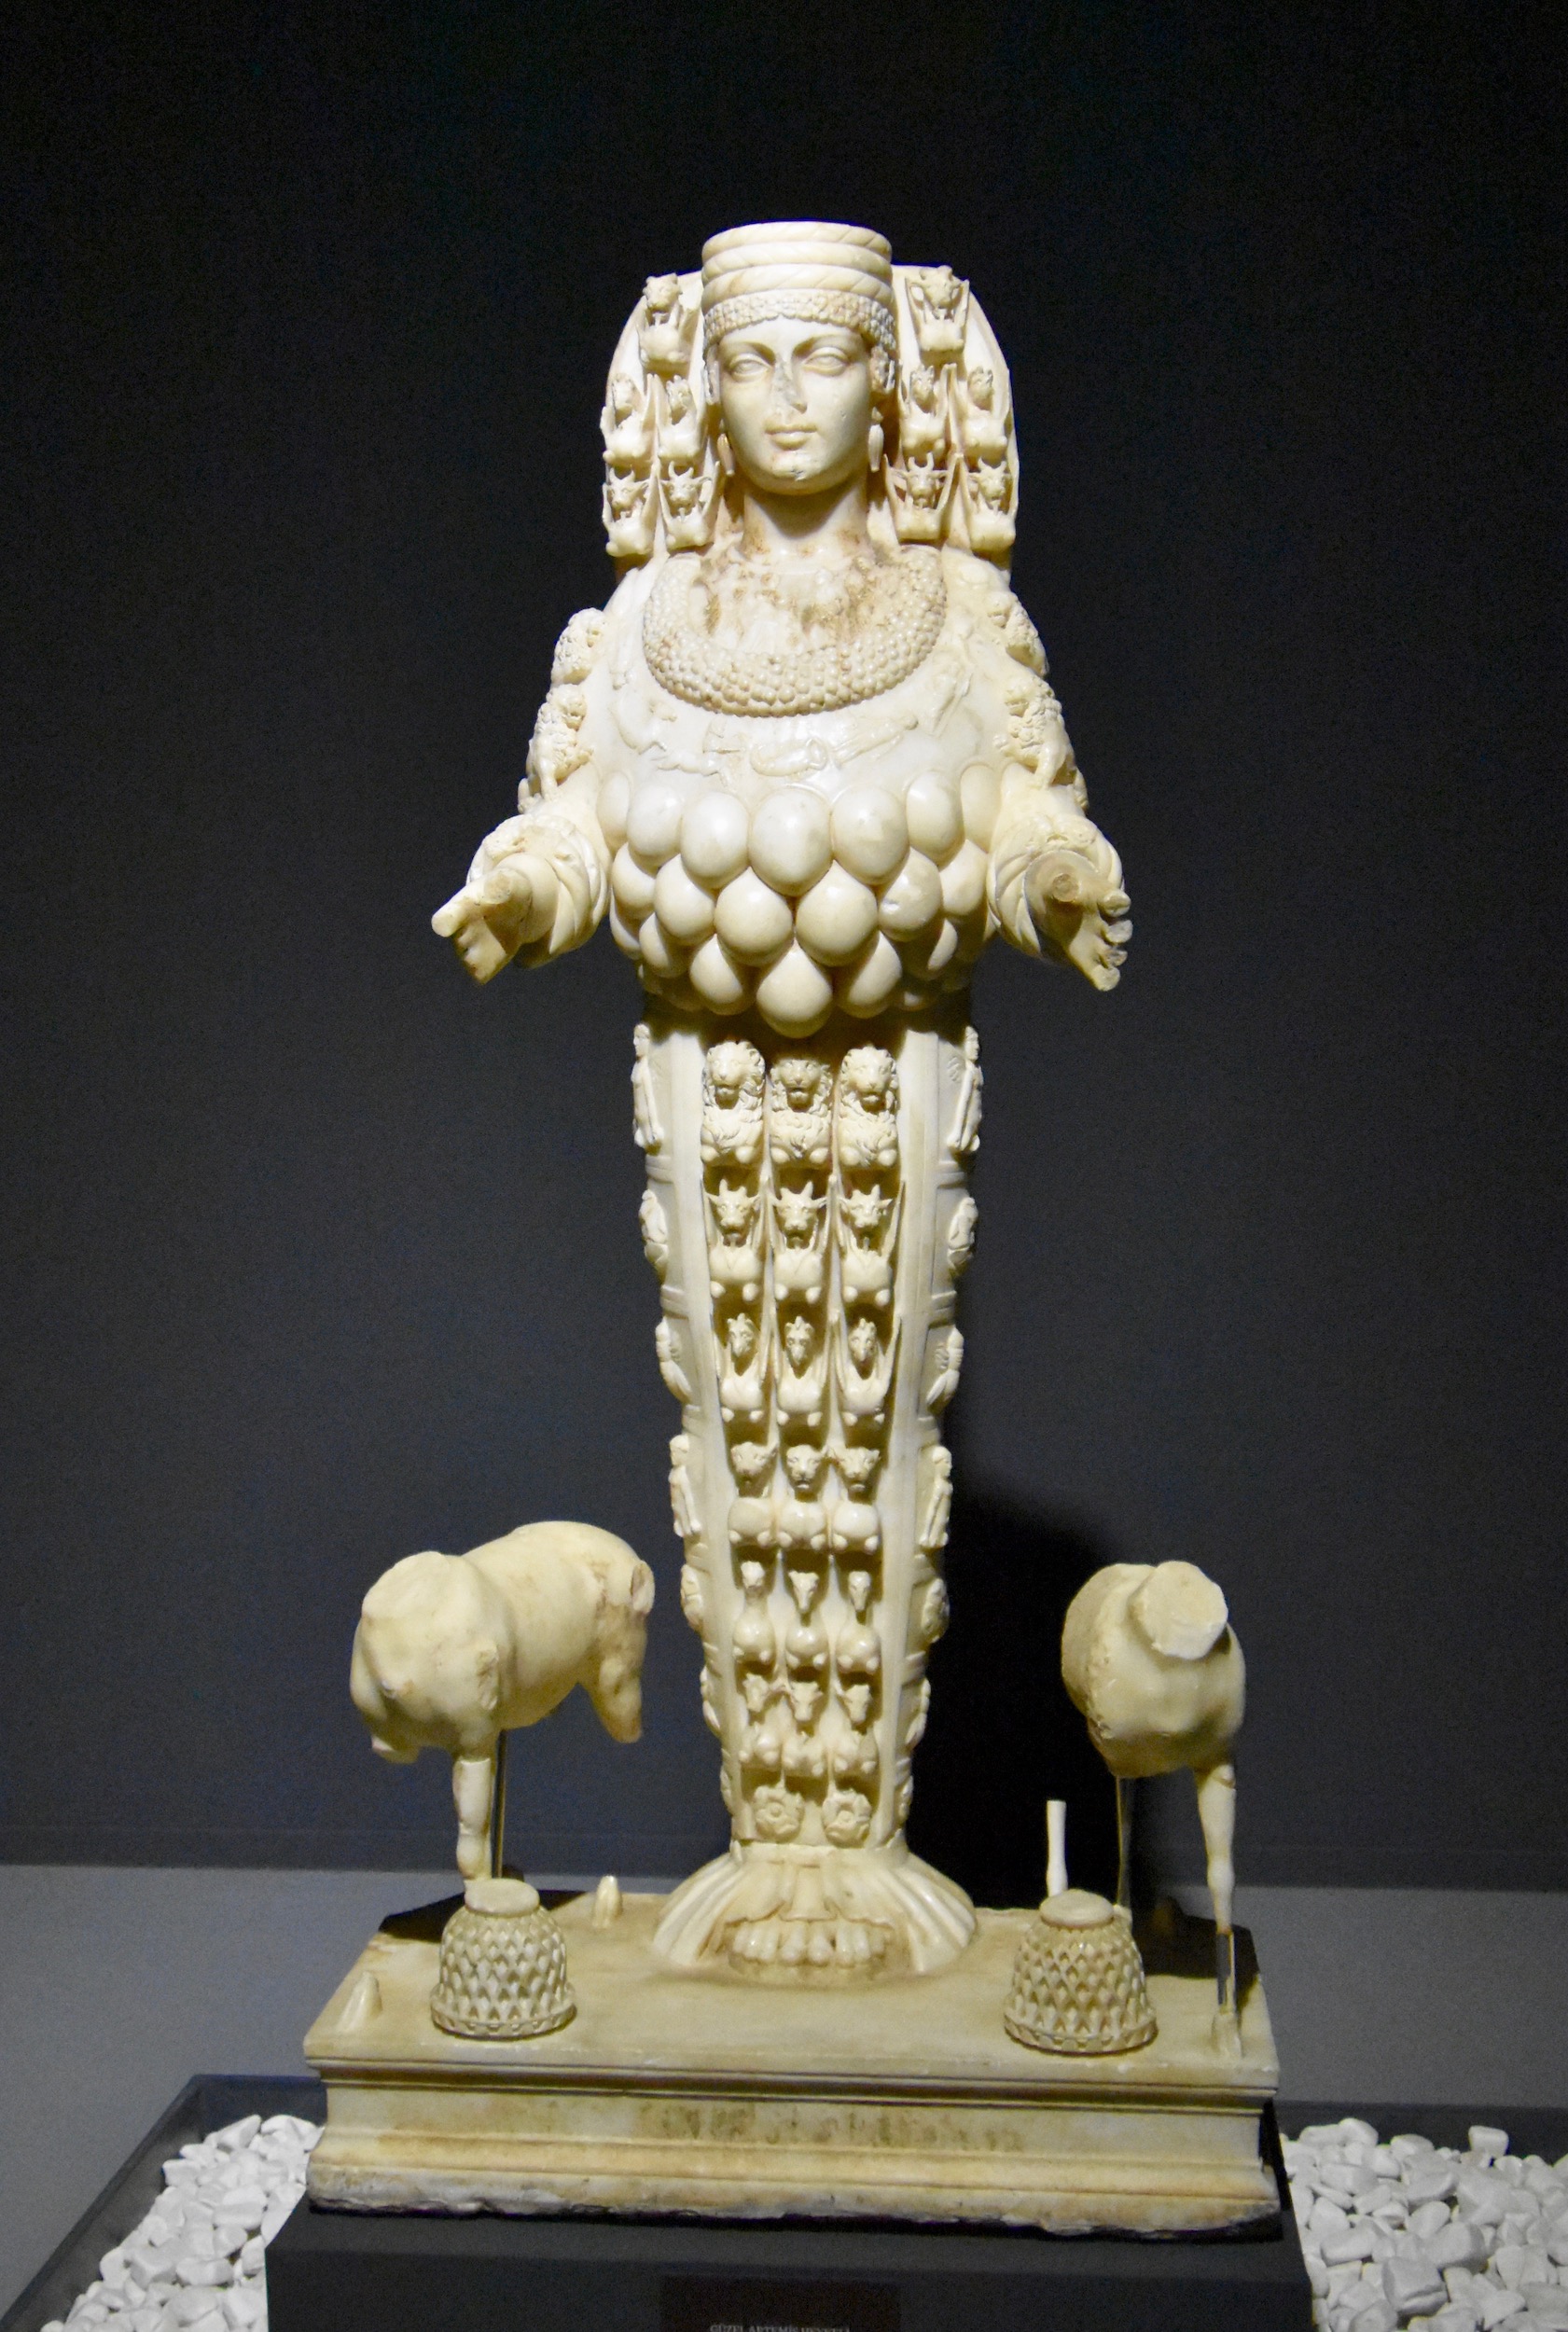 Artemisin the Ephesus Museum